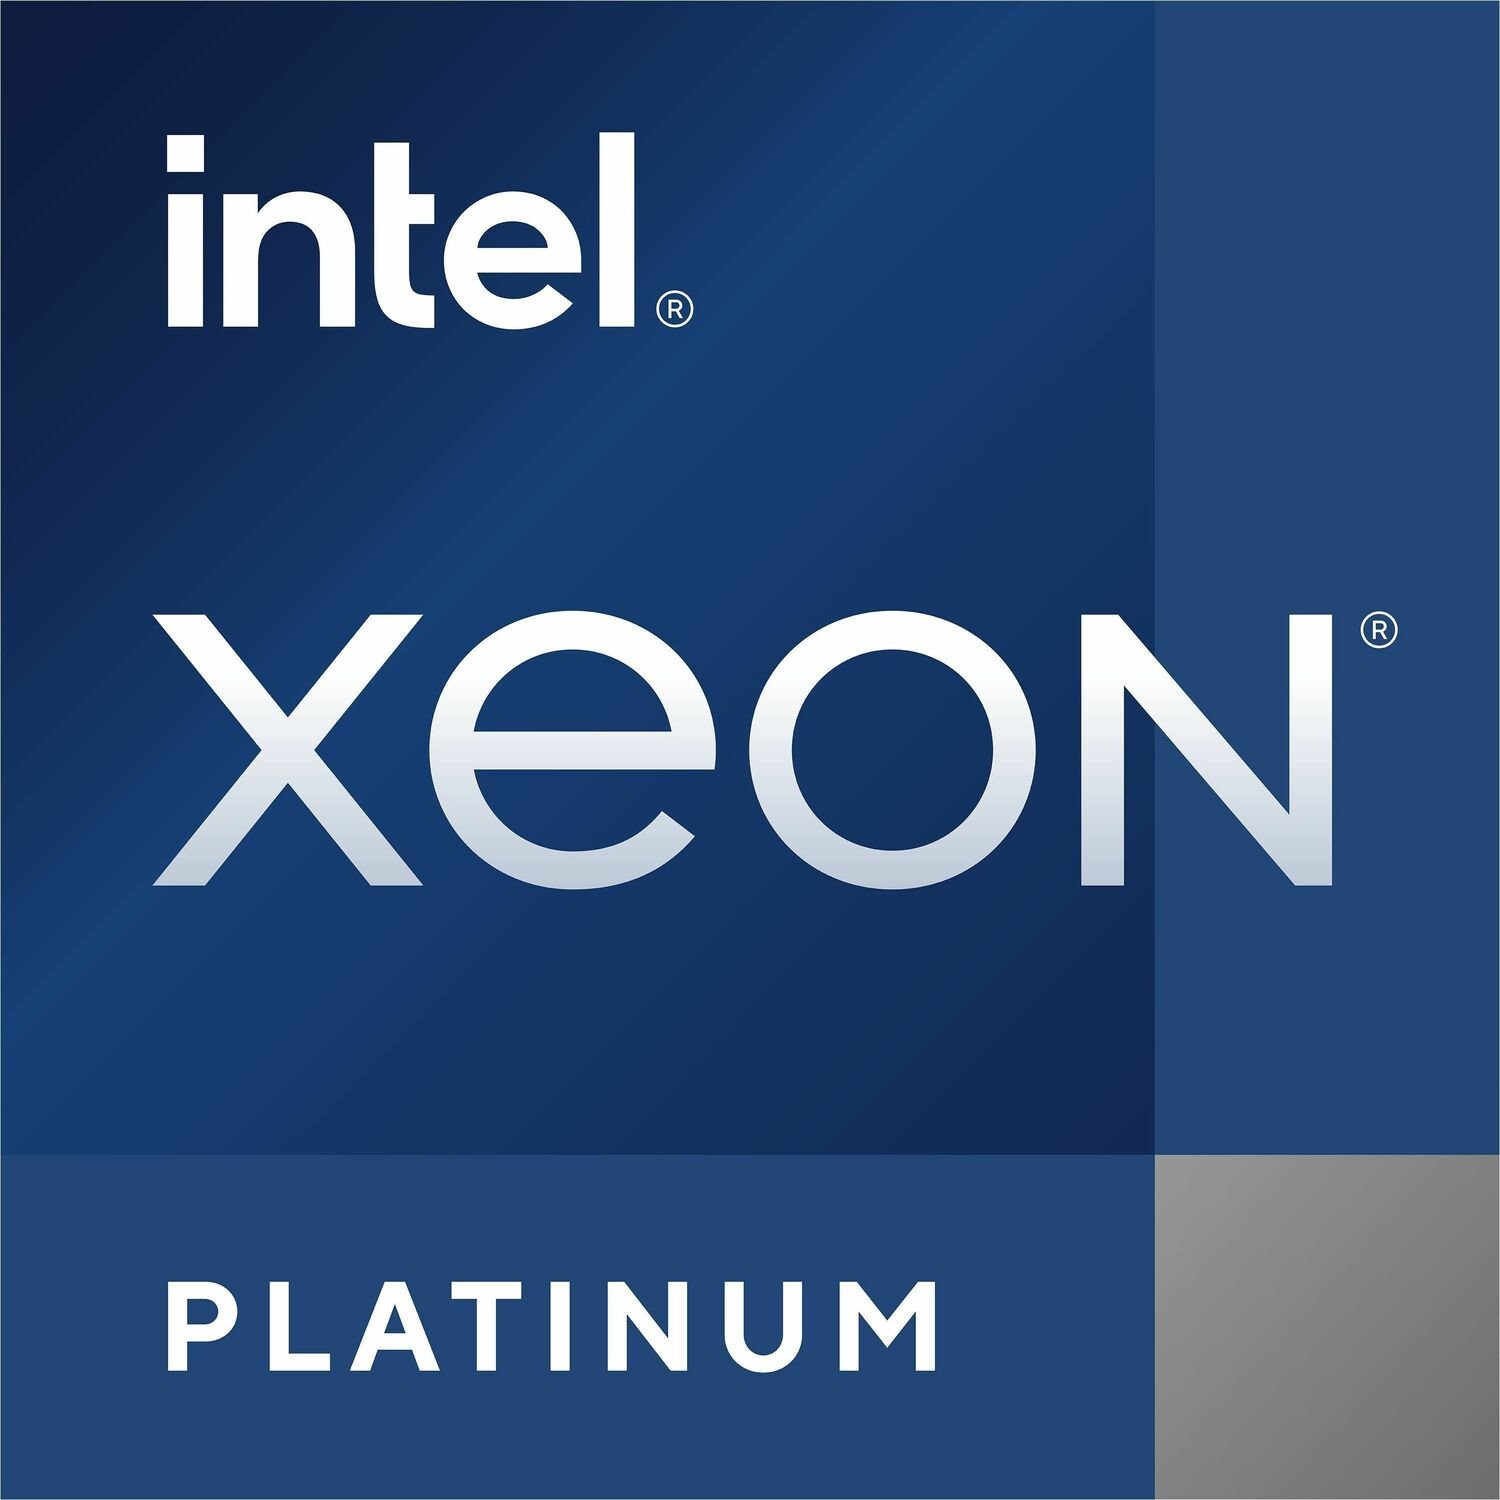 Cisco Intel Xeon Platinum (3rd Gen) 8352Y Dotriaconta-core (32 Core) 2.20 GHz Processor Upgrade